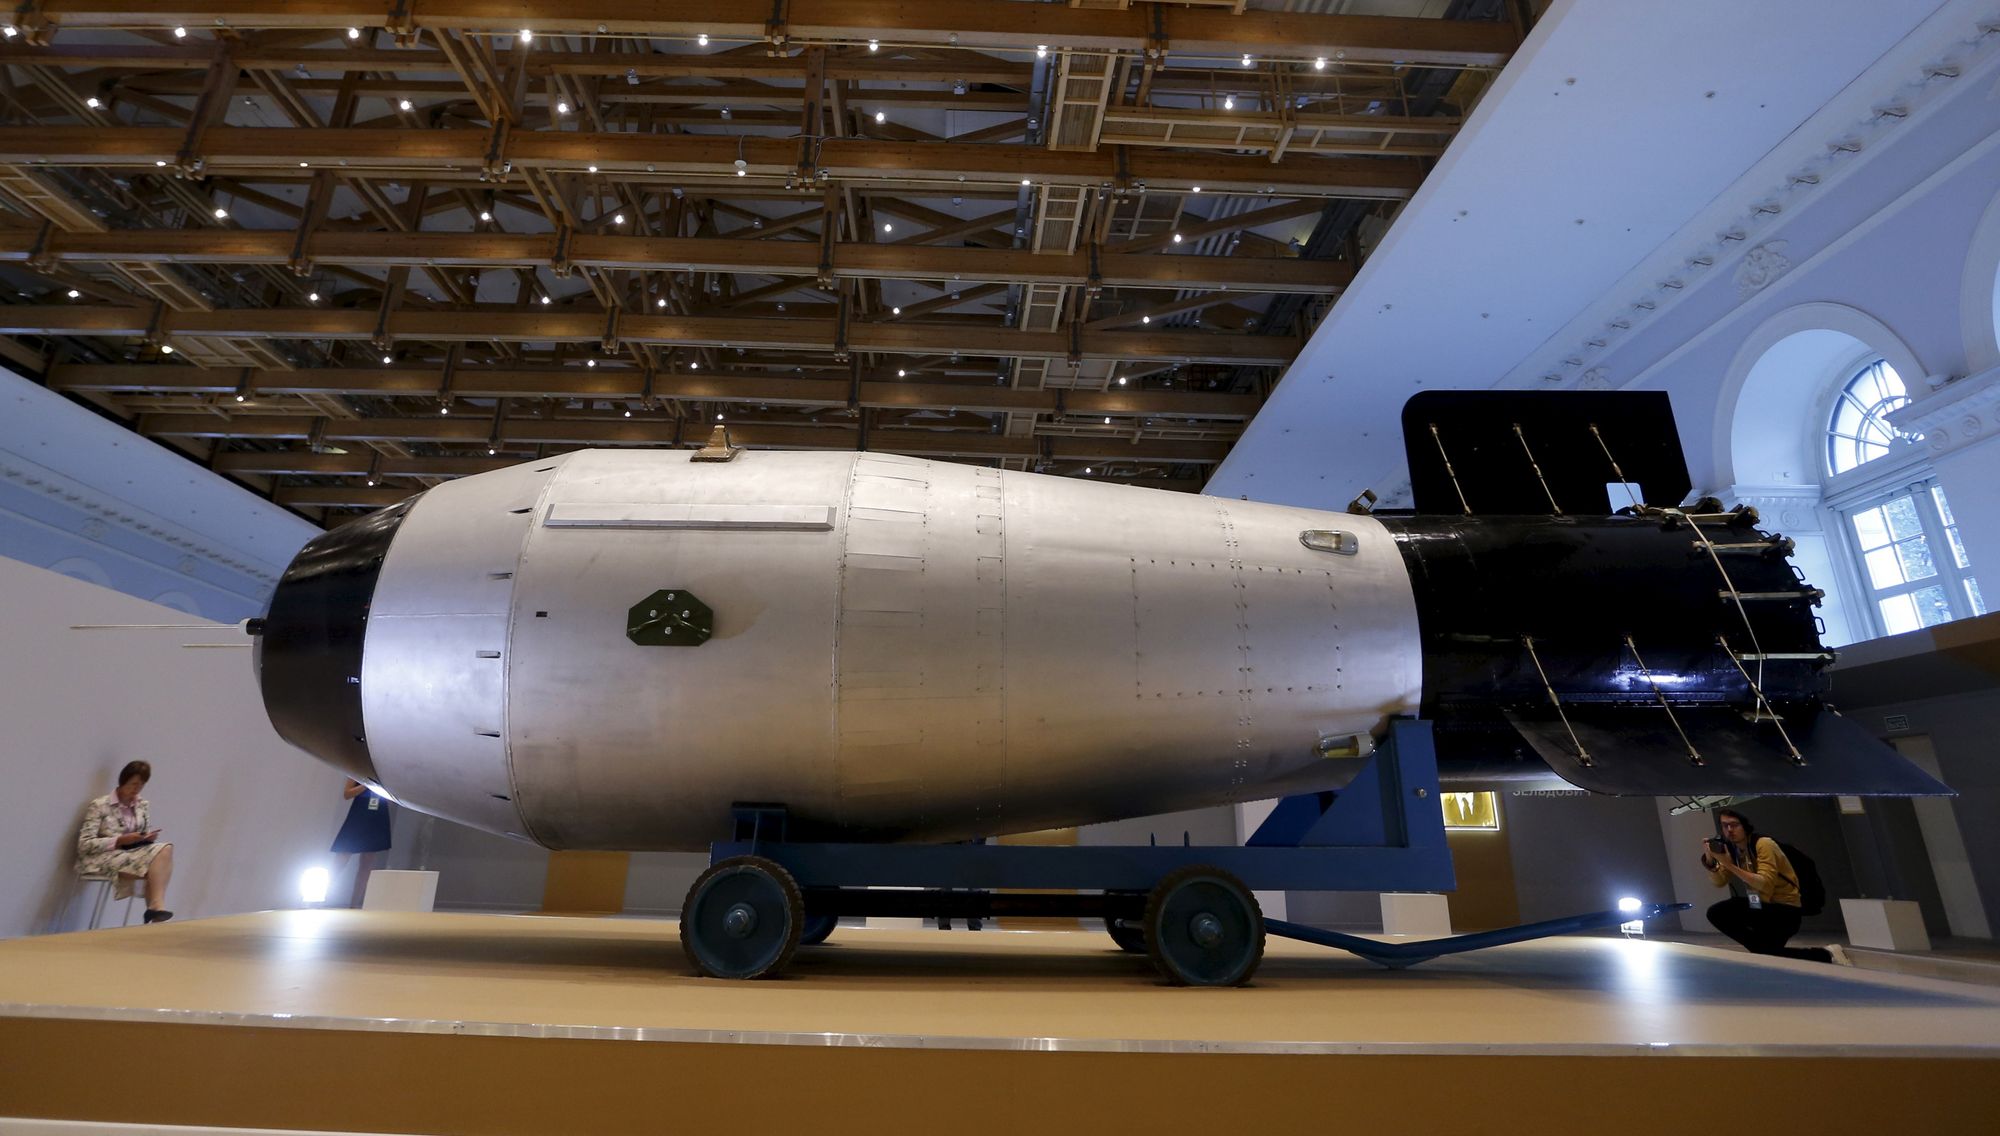 Replika av Tsar-bomben (AN602/RDS-220), det kraftigske atomvåpnet som noen gang har blitt detonert. Her avbildet under en utstilling i Moskva i 2015.